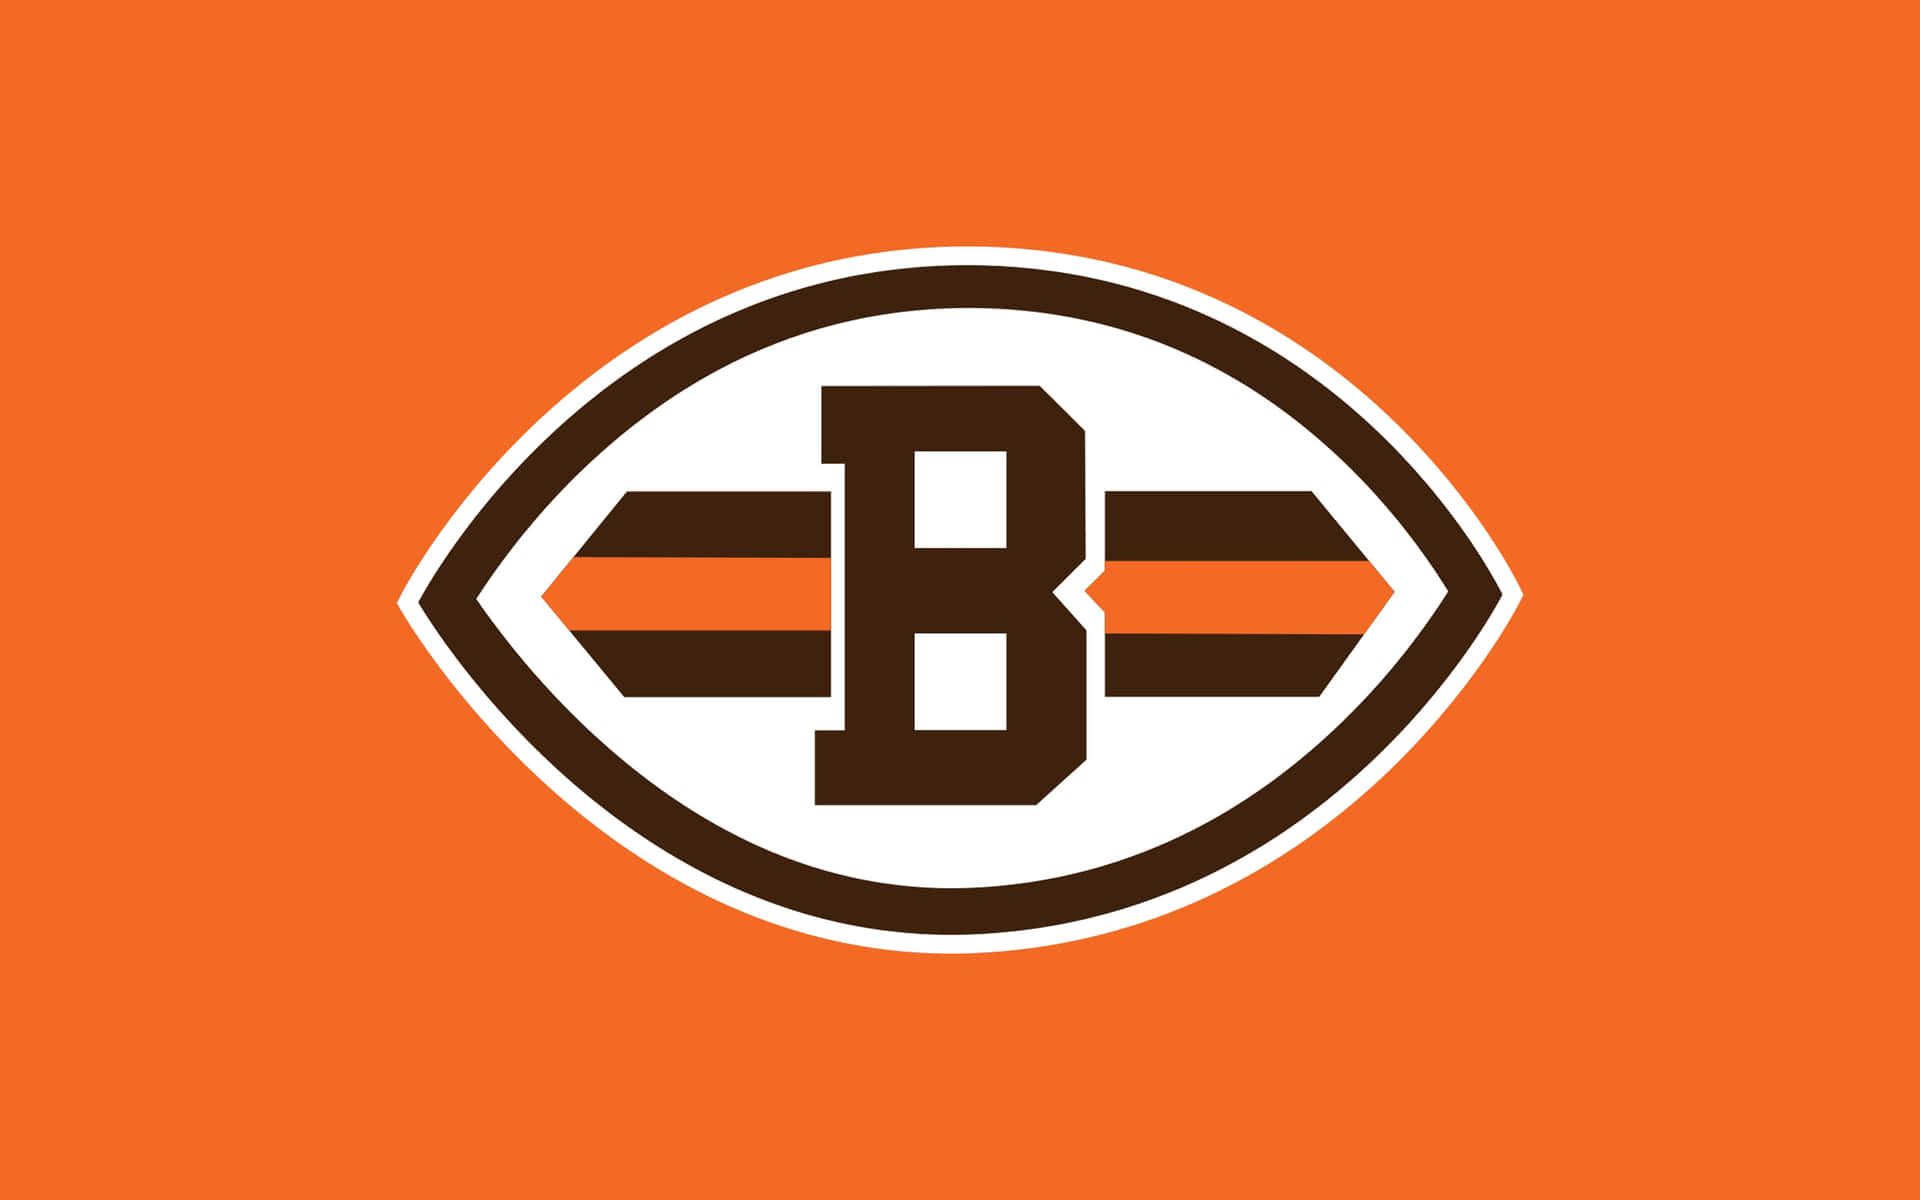 Officielt logo for NFL's Cleveland Browns. Wallpaper